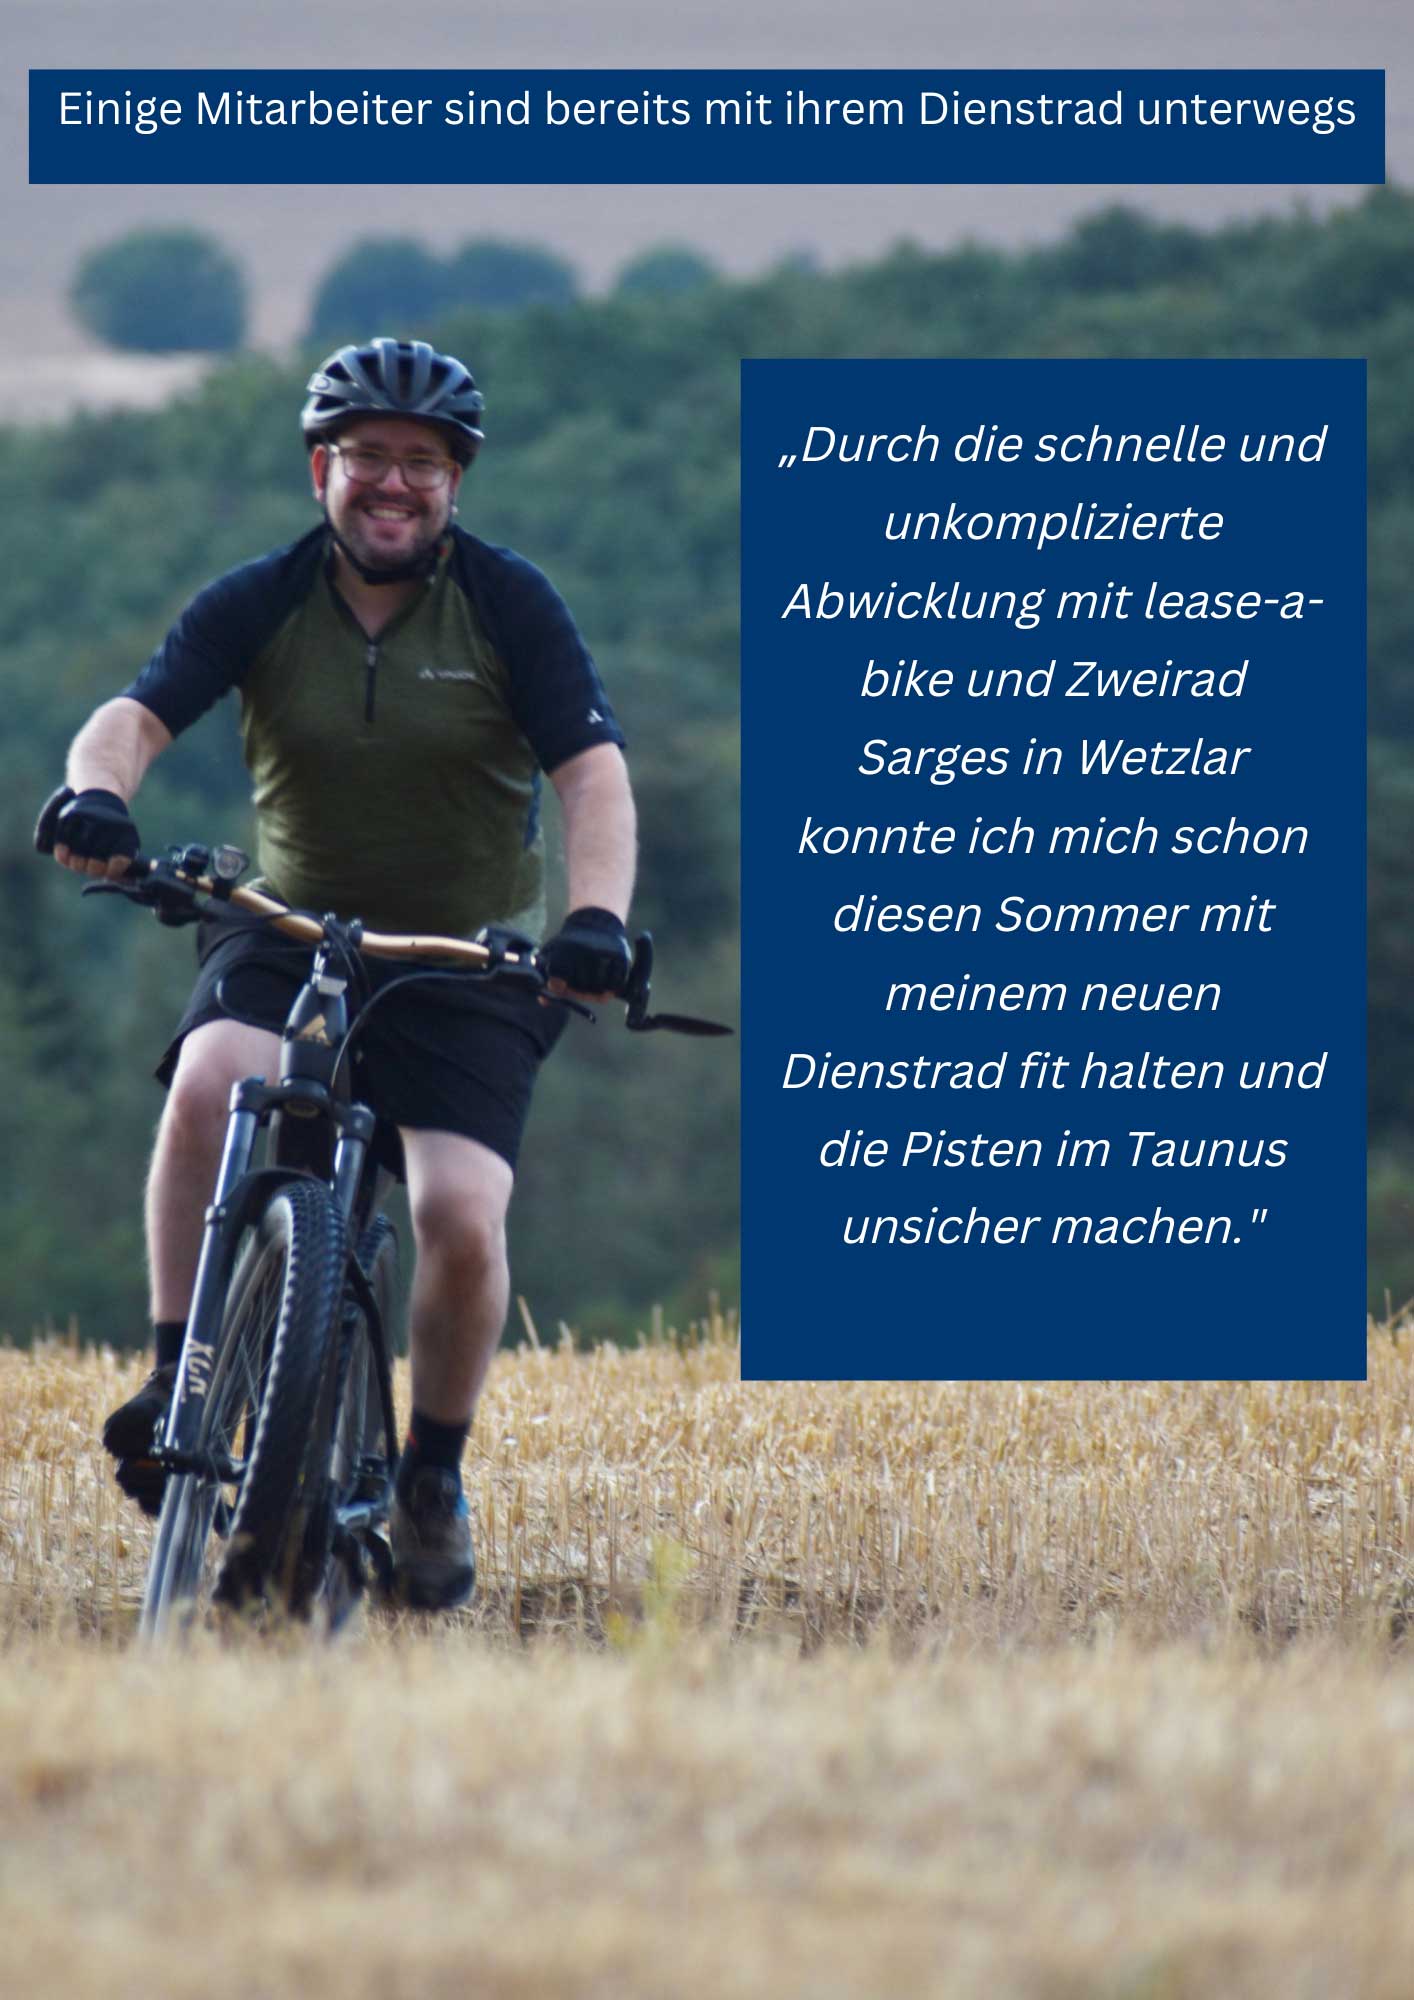 VIS Mitarbeiter Fahrrad leasen Zweirad Sarges Wetzlar